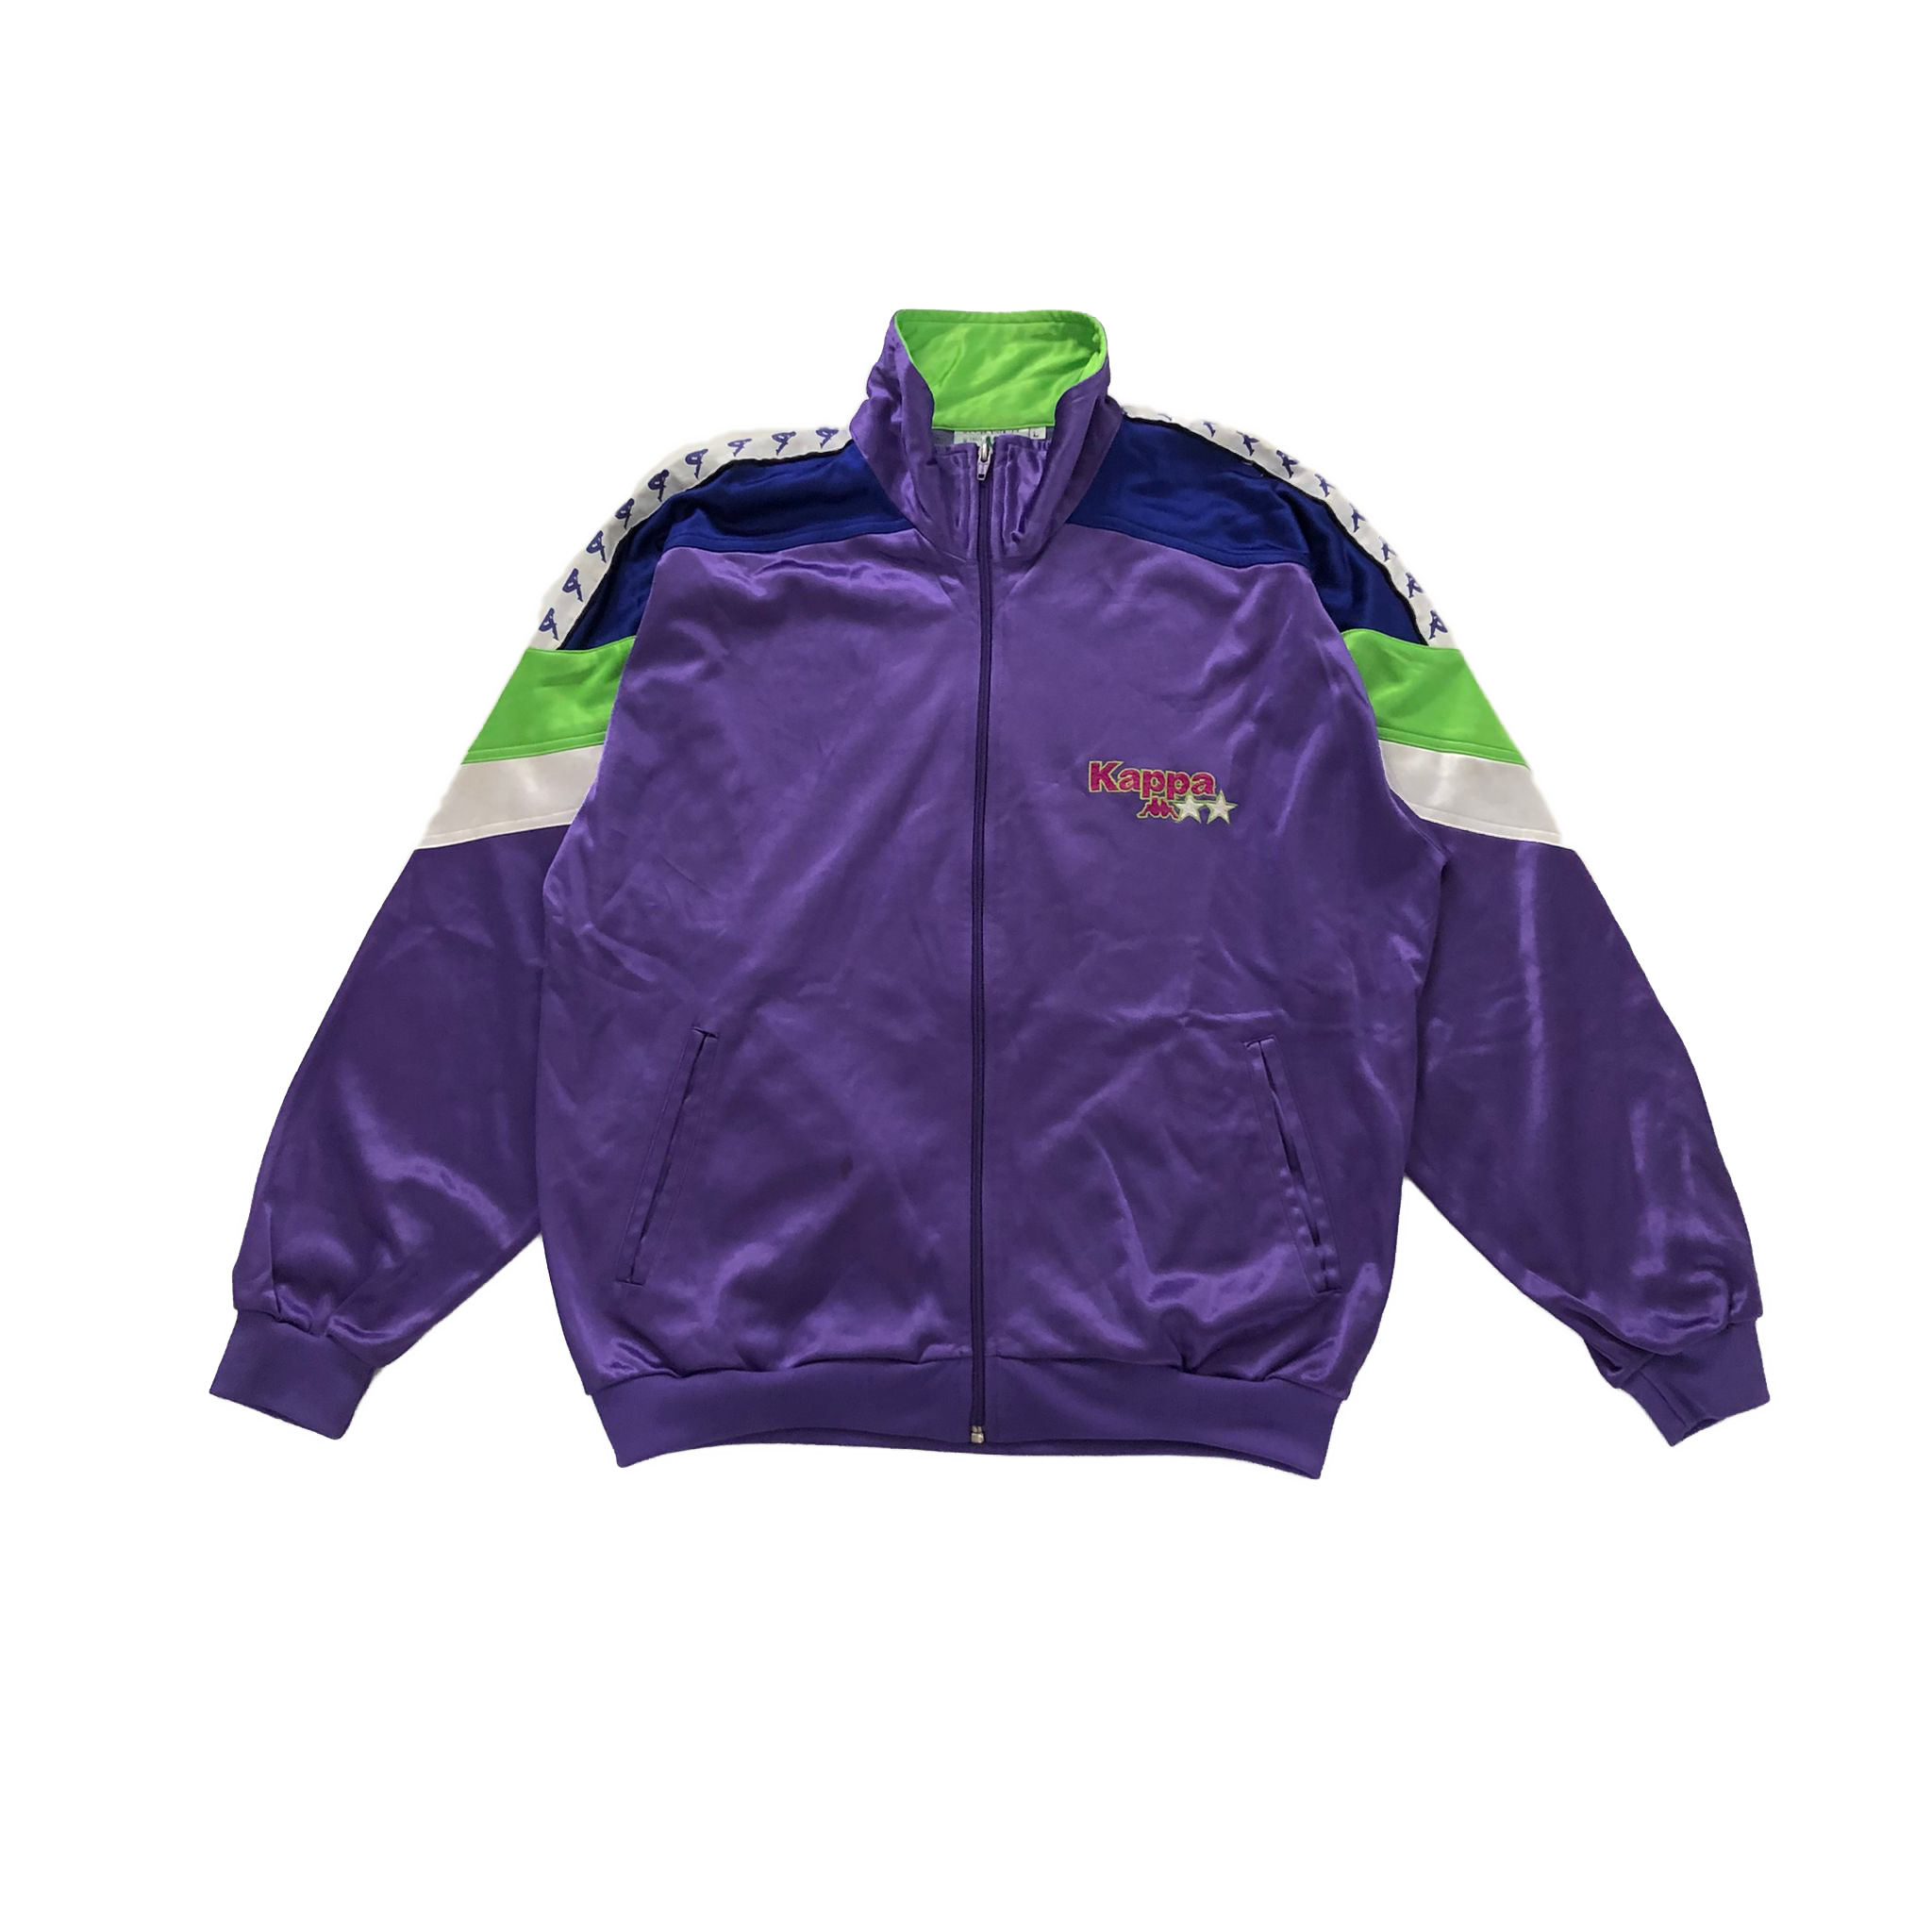 90's Kappa track jacket